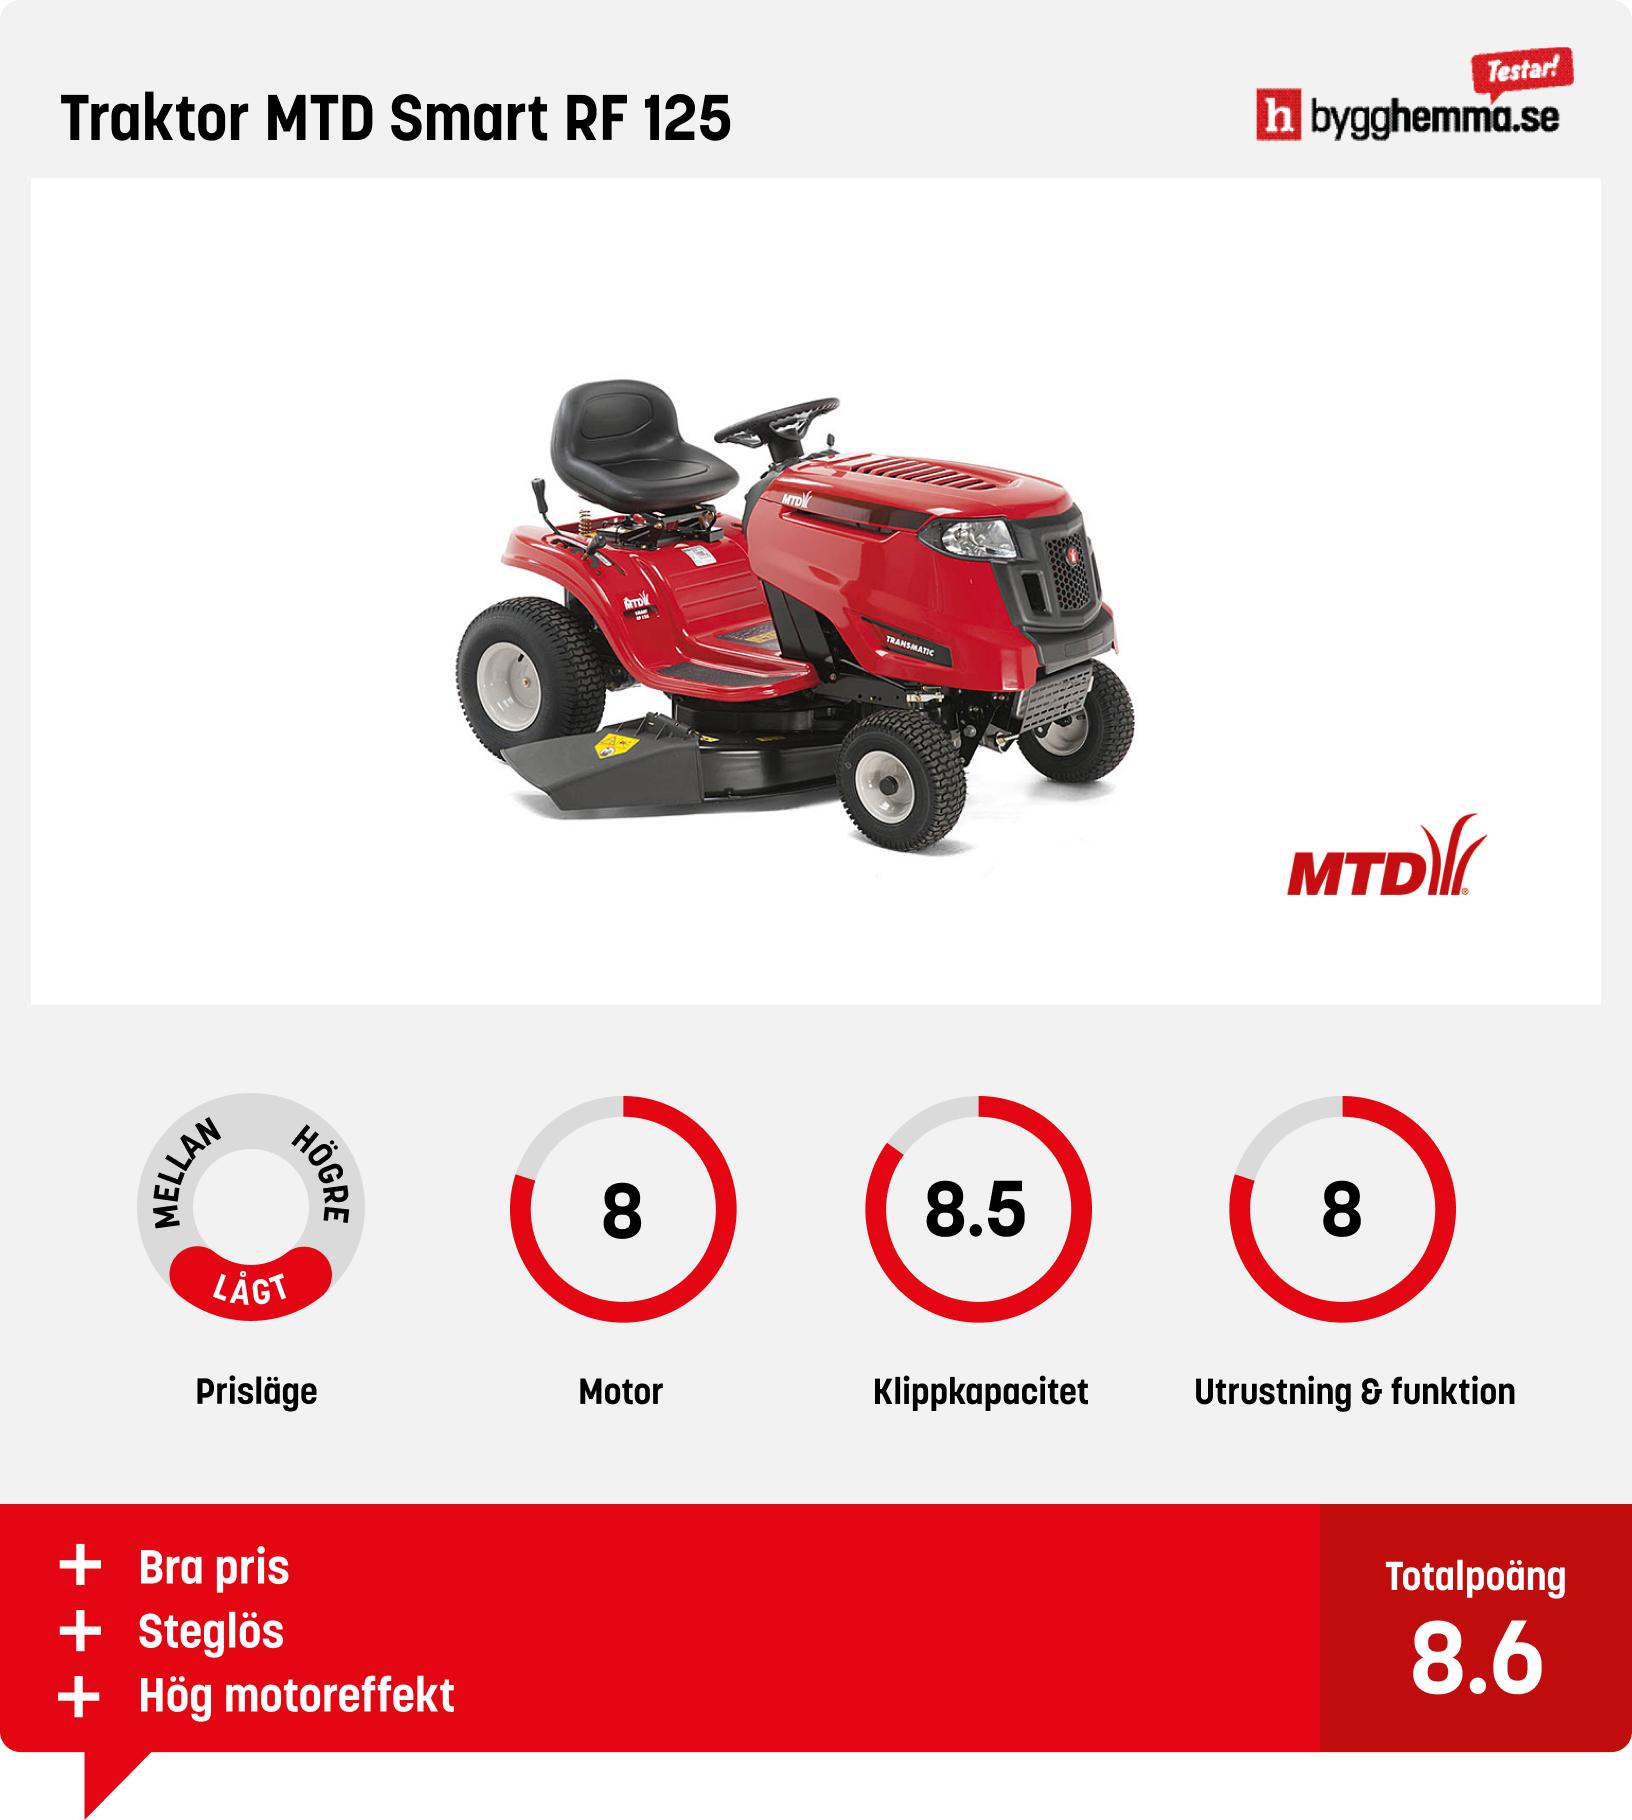 Trädgårdstraktor test - Traktor MTD Smart RF 125